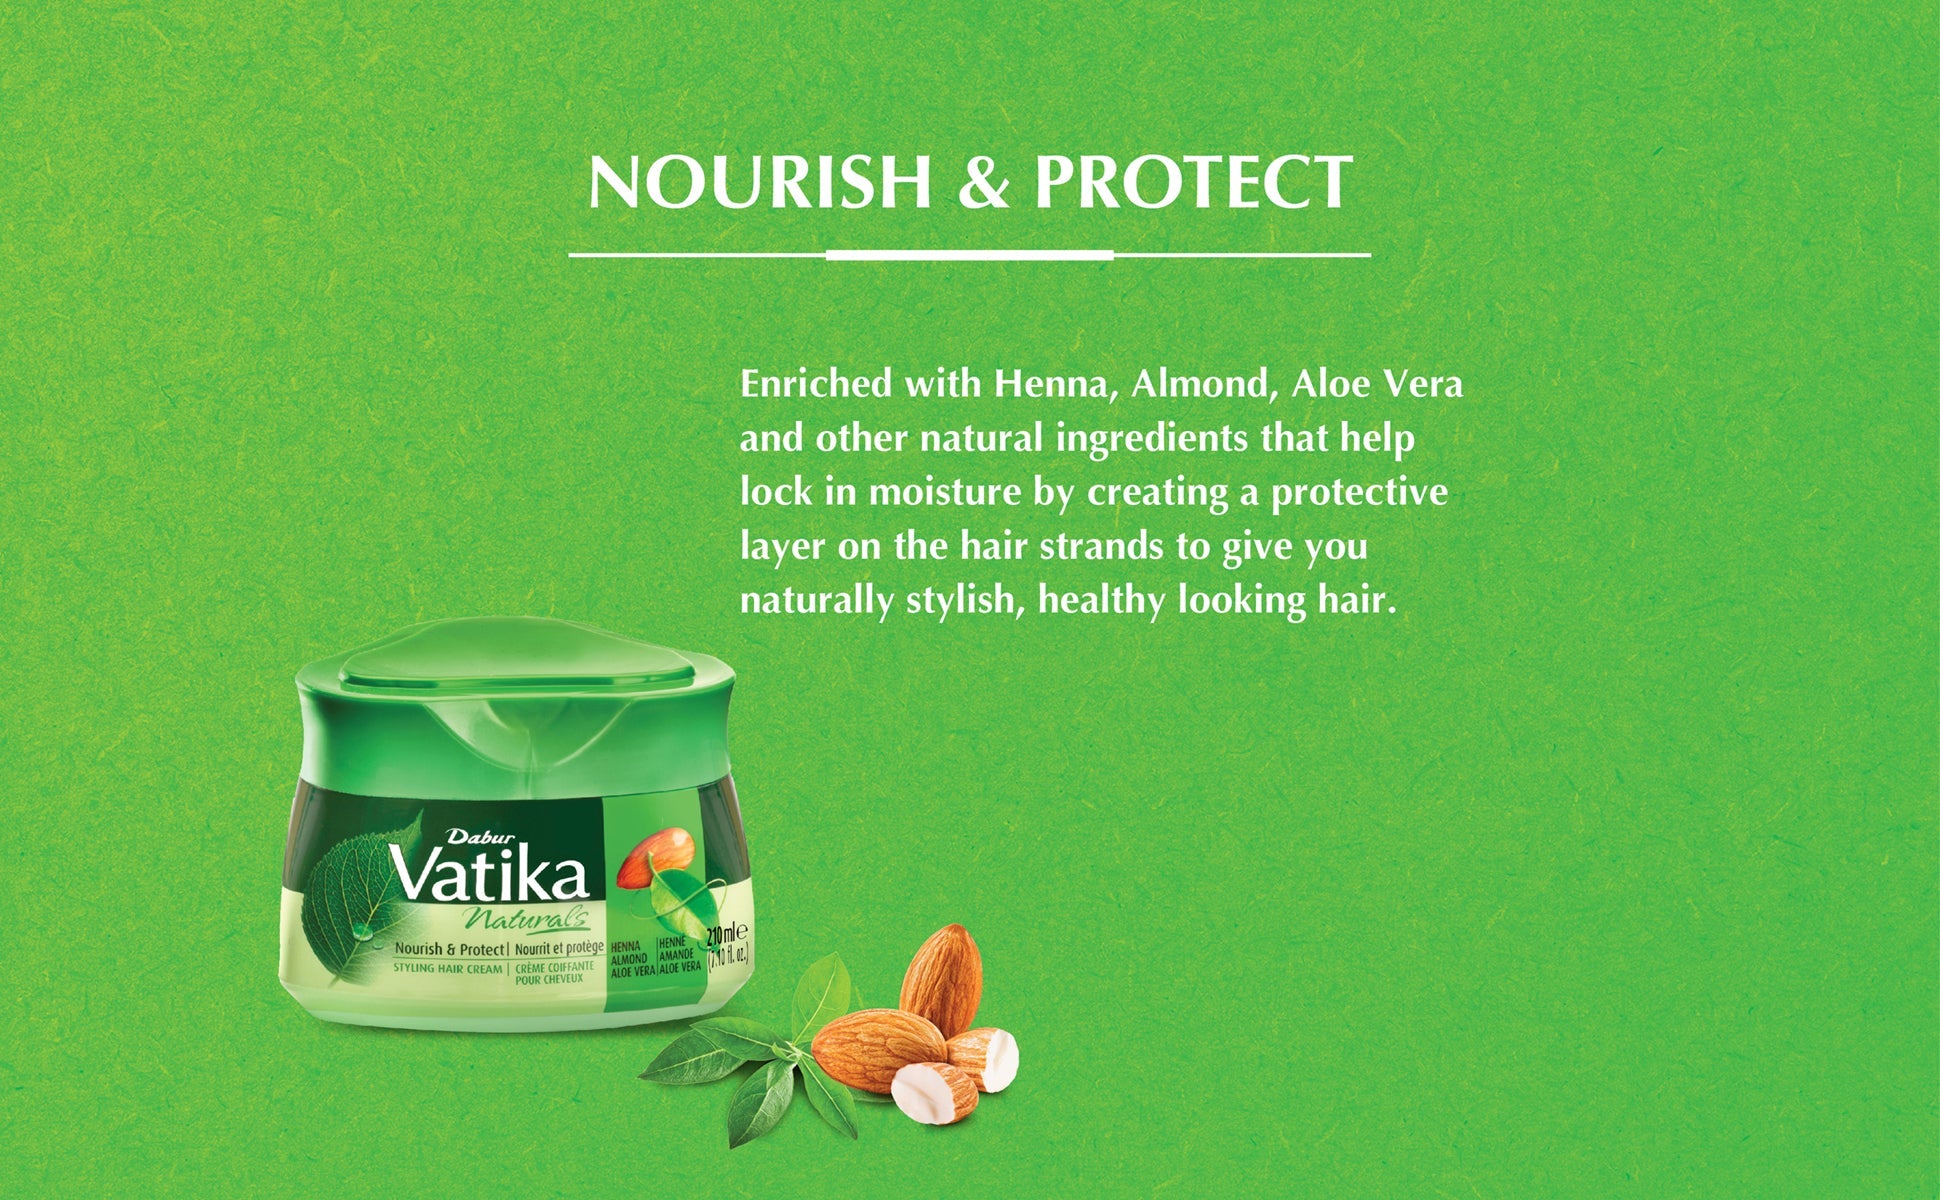 Vatika Naturals Nourish & Protect Styling Hair Cream